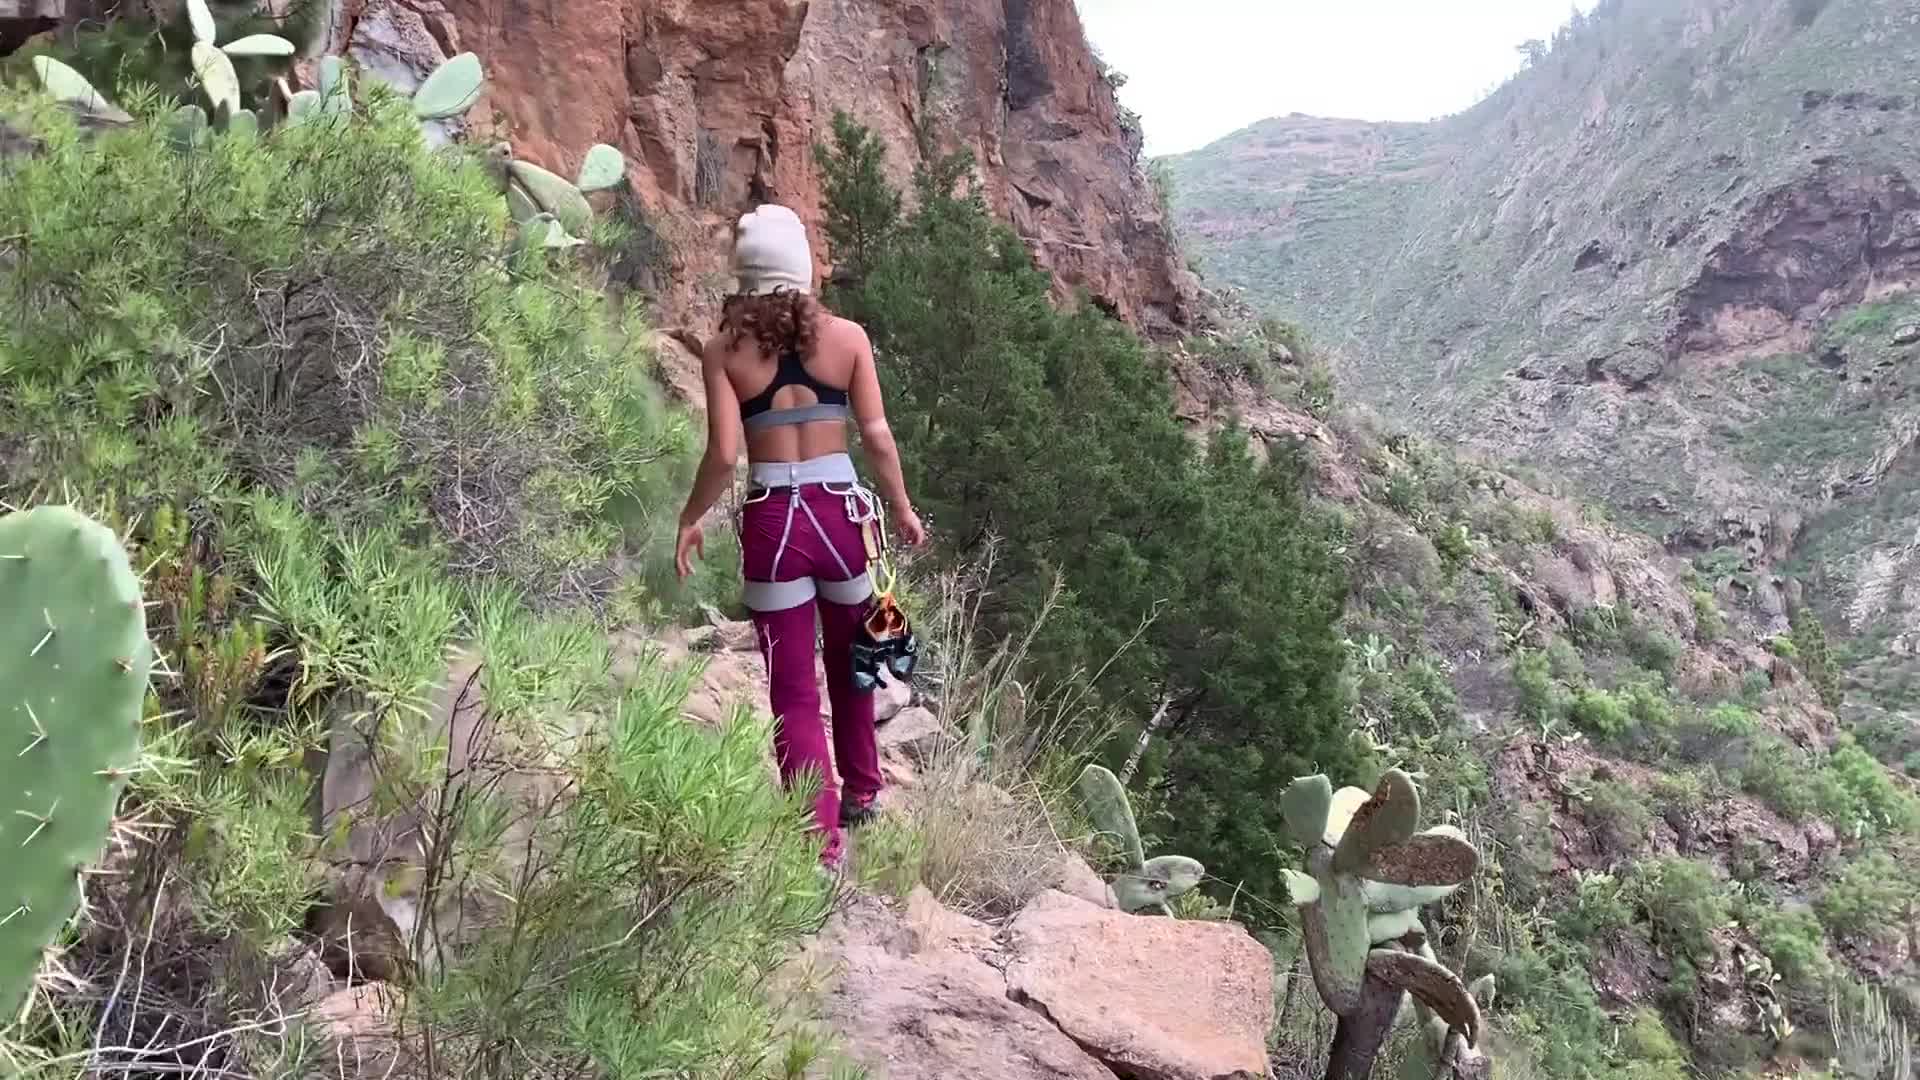 Crazy par klatre knulle hverandre på toppen av et fjell - Videos